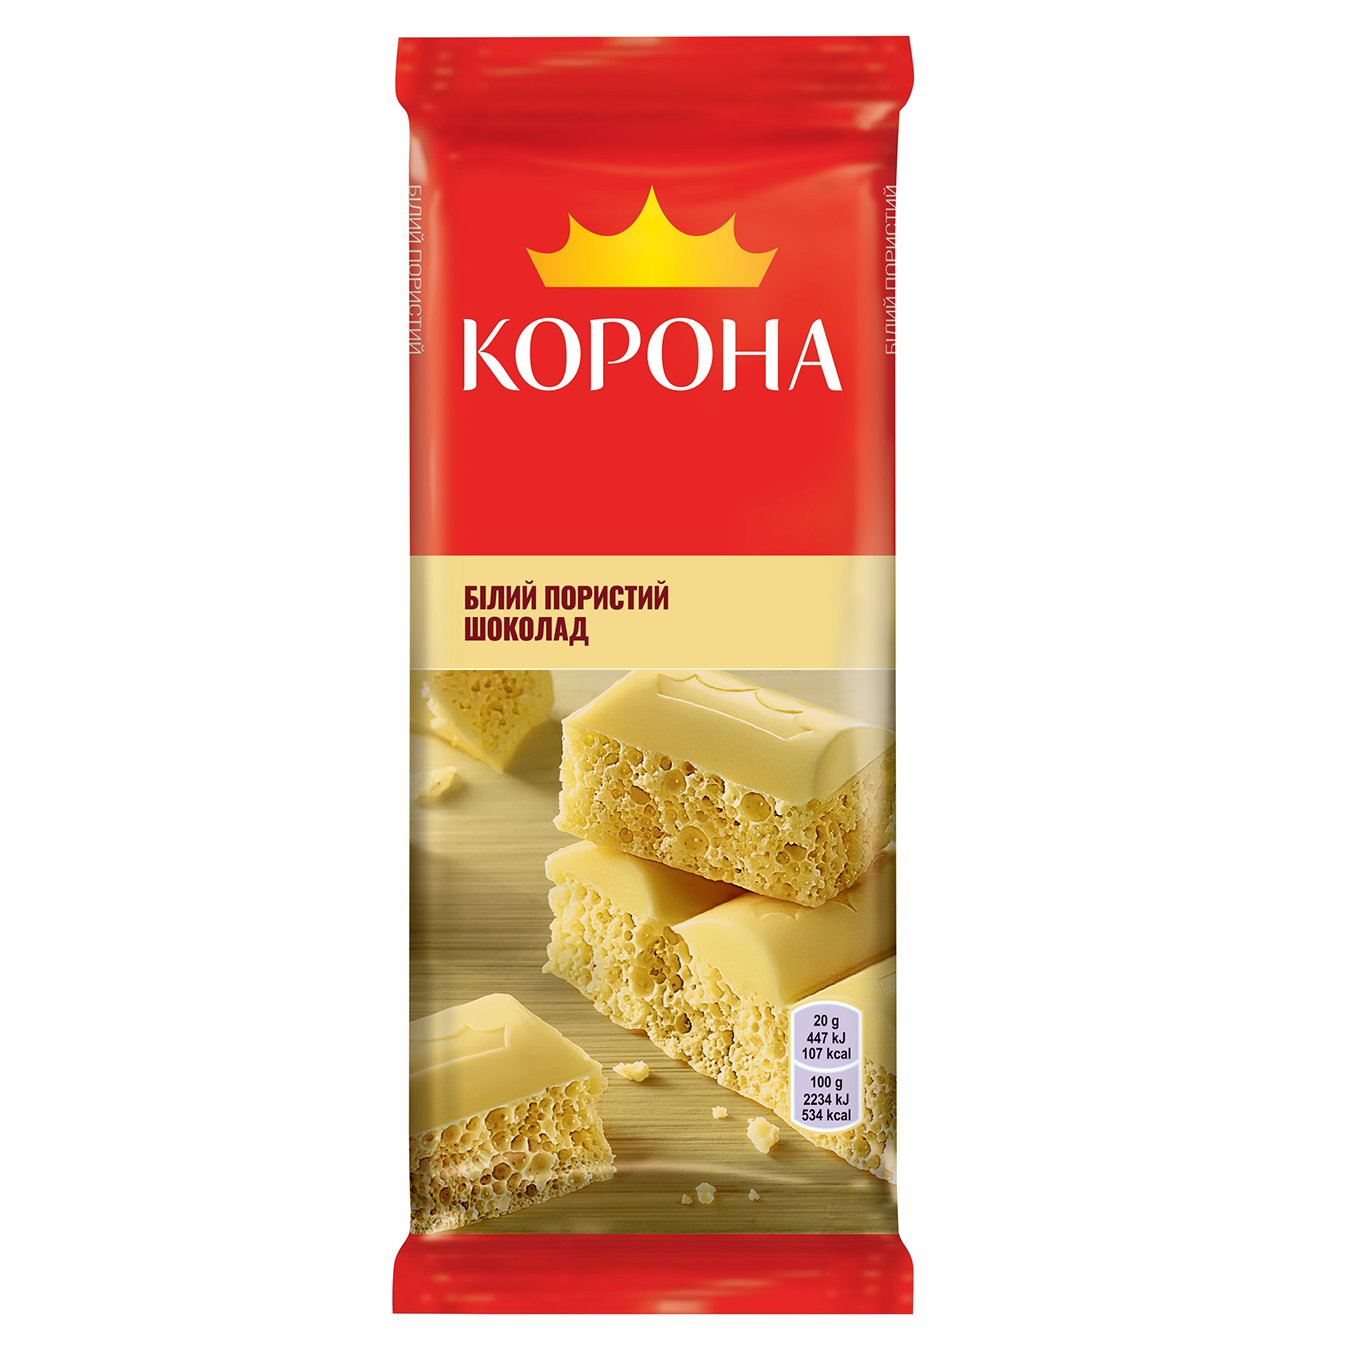 Korona air white chocolate 80g